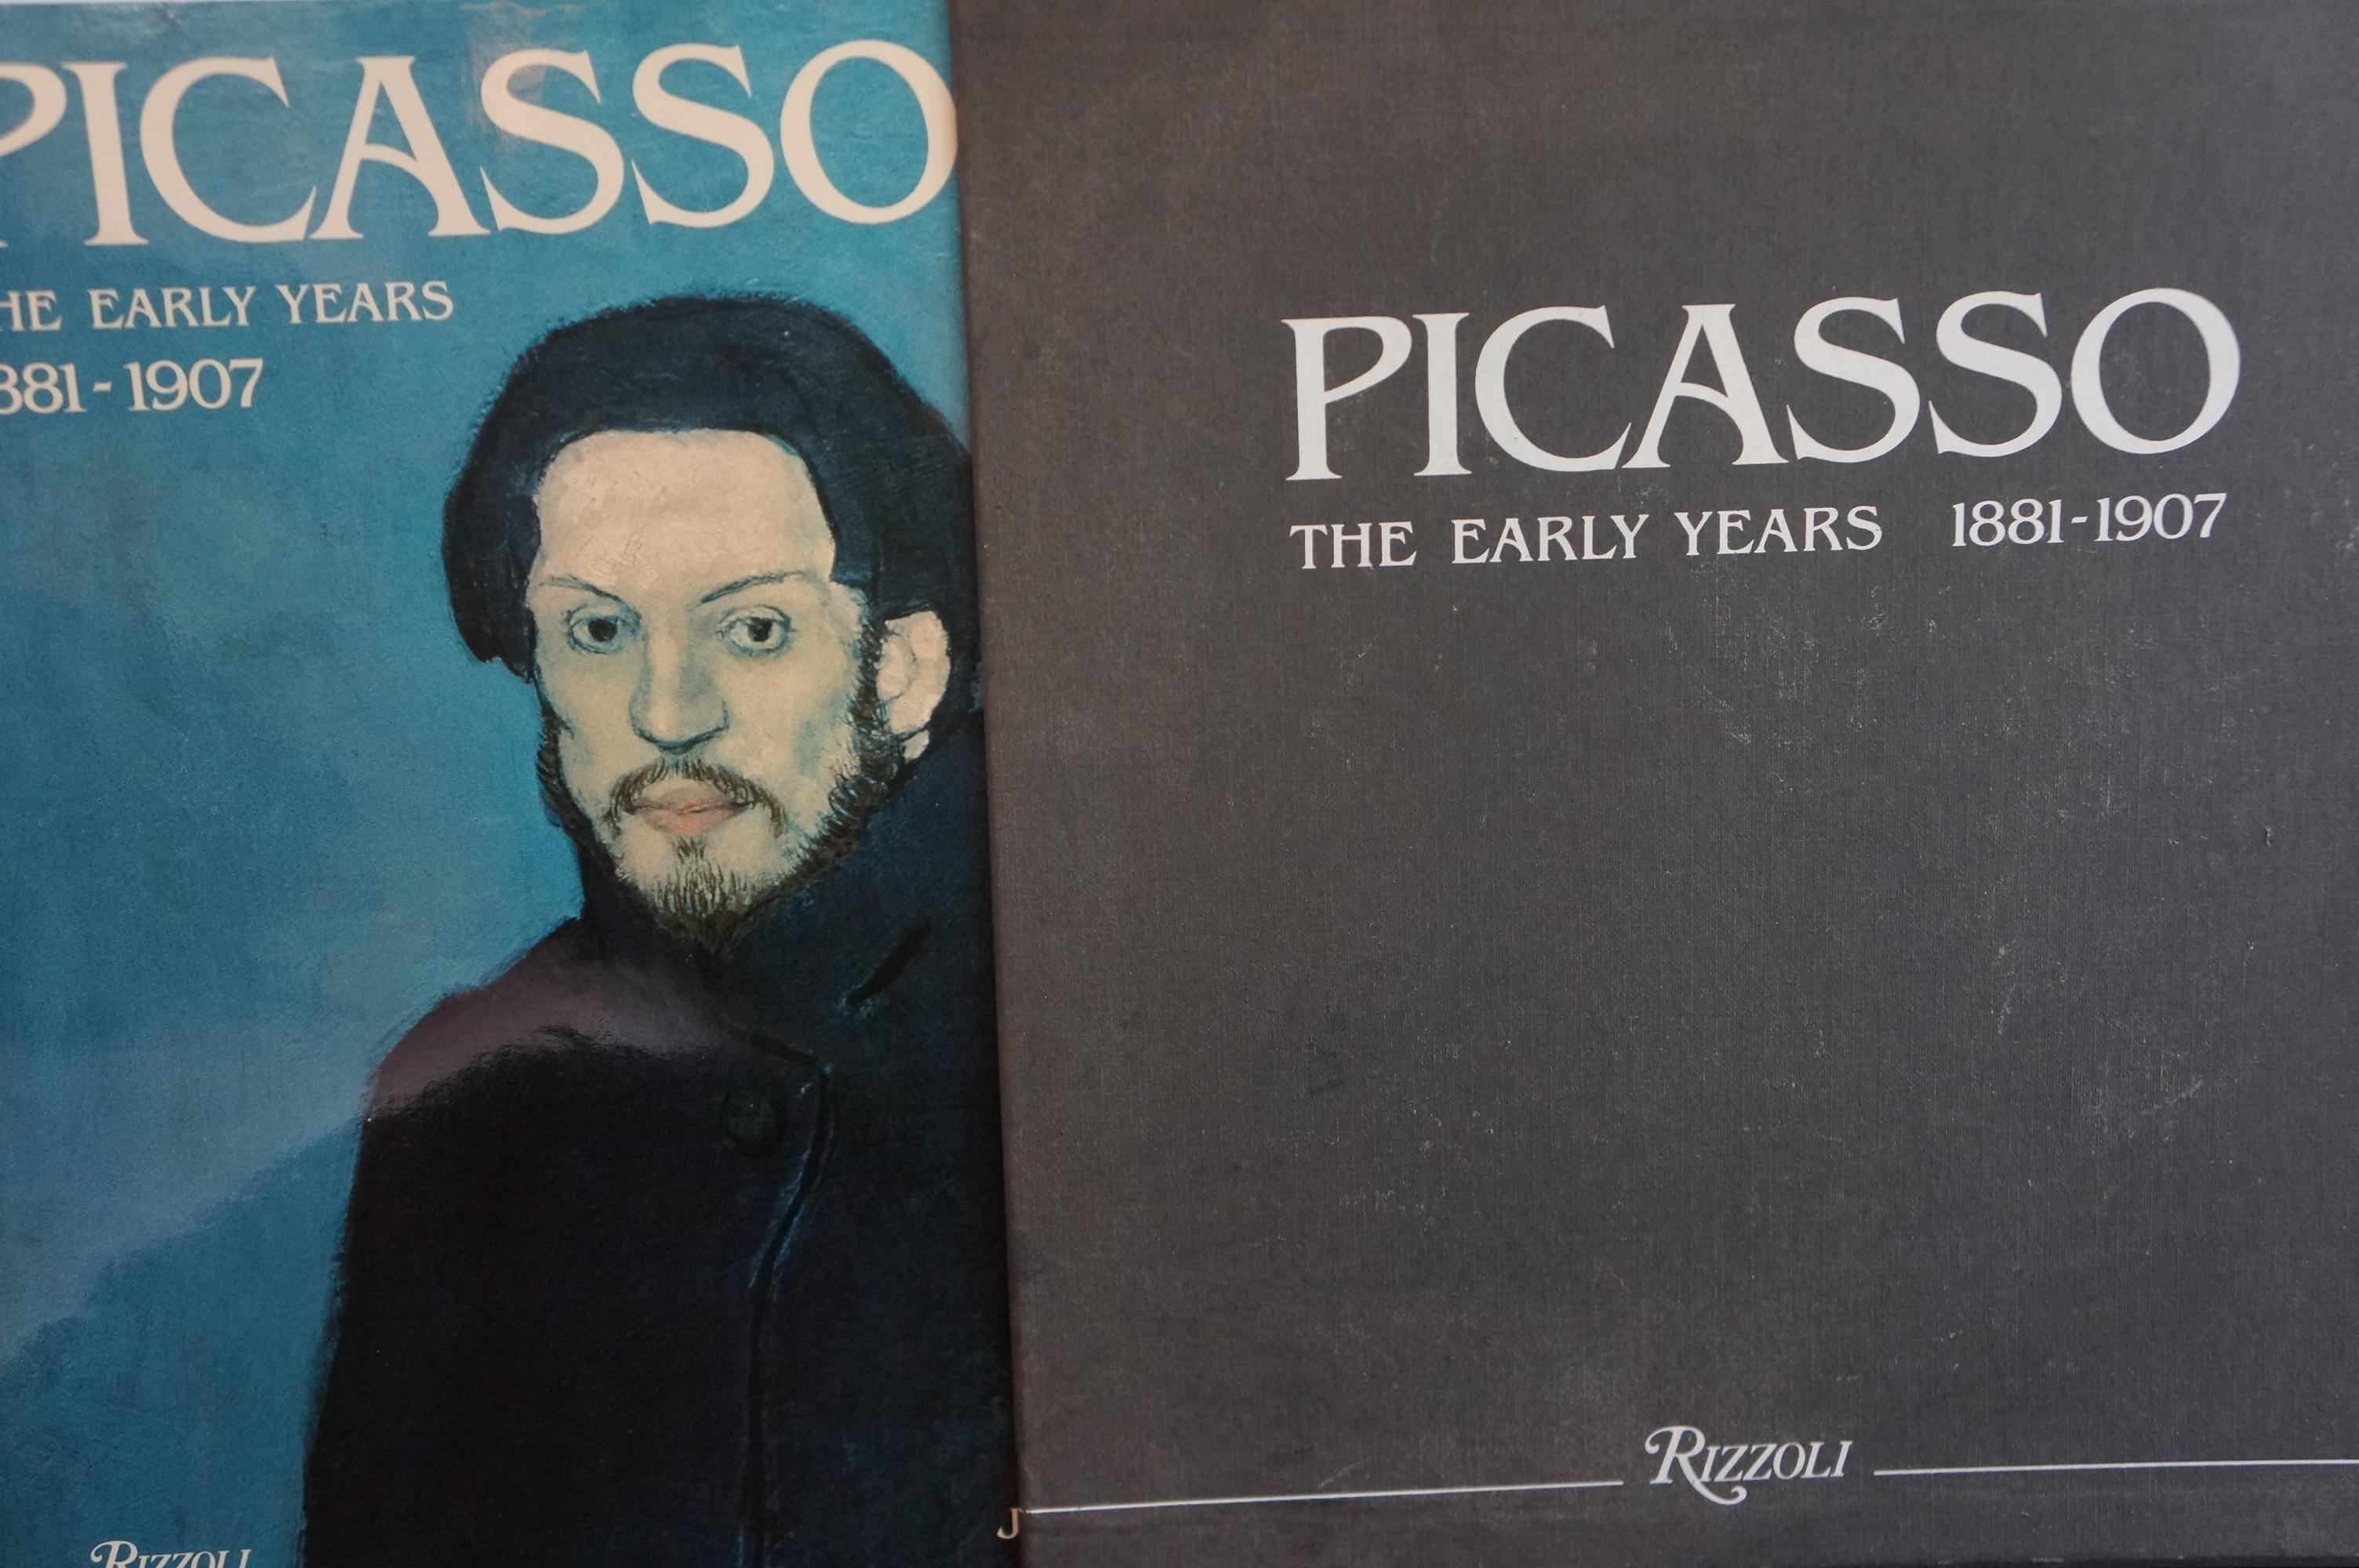 Pablo Picasso Buch von Palau I Fabre, das Picassos Werk von 1881 bis 1907 beschreibt. Veröffentlicht von Rizzoli, New York 1981. Dieses Hardcover-Buch wird mit einer Hardcover-Hülle geliefert. Das Buch selbst ist in sehr gutem Zustand, die